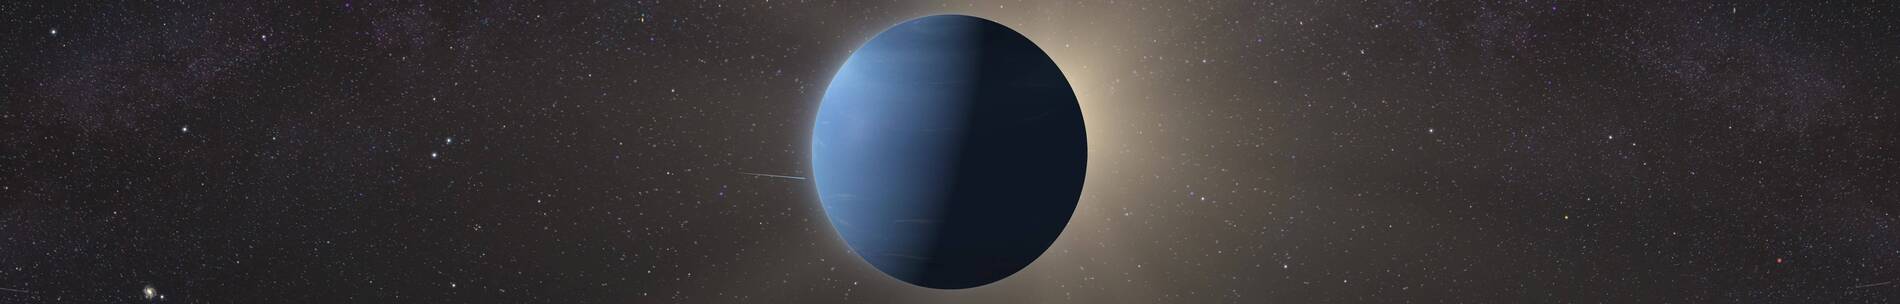 八大行星海王星